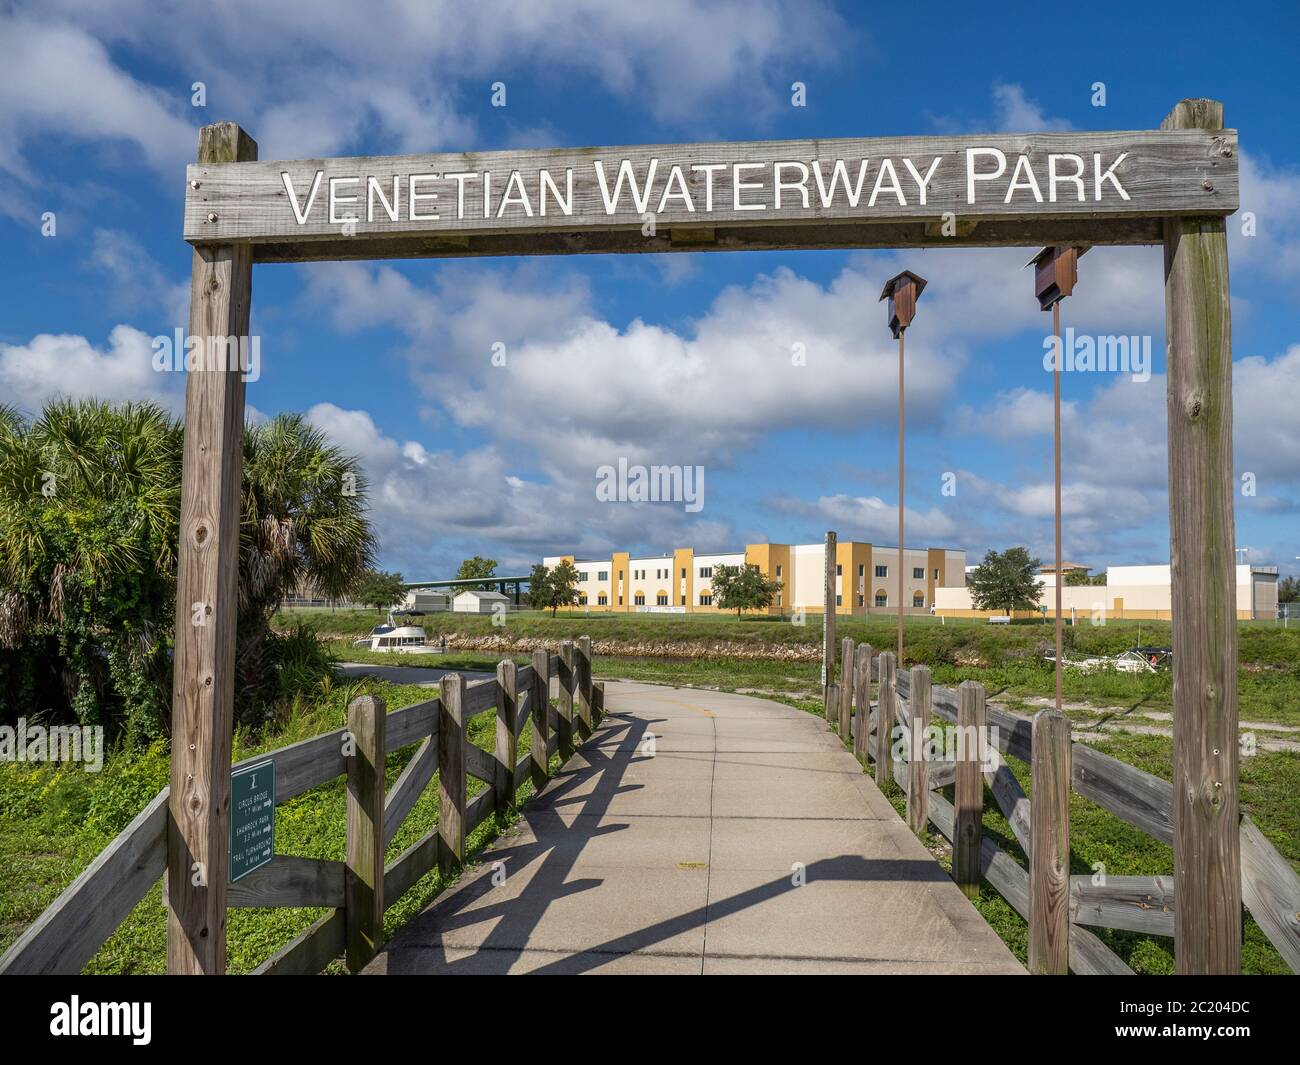 Ruta en bicicleta por el Parque acuático Venetian Waterway Park a lo largo de la vía navegable intercostera del Golfo en Venecia, Florida en los Estados Unidos Foto de stock